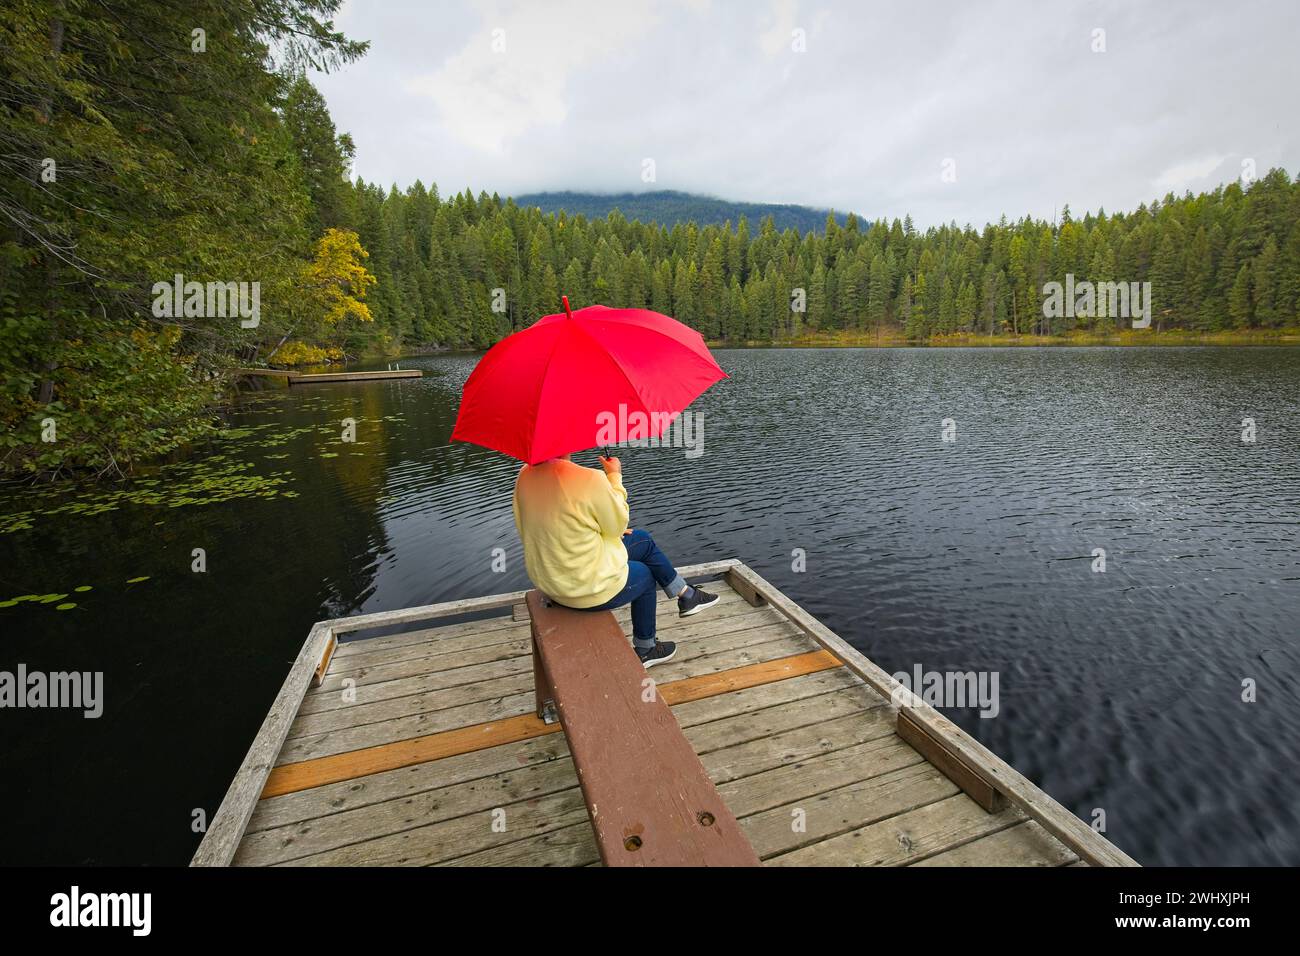 Woman holding umbrella enjoys the lake. Stock Photo